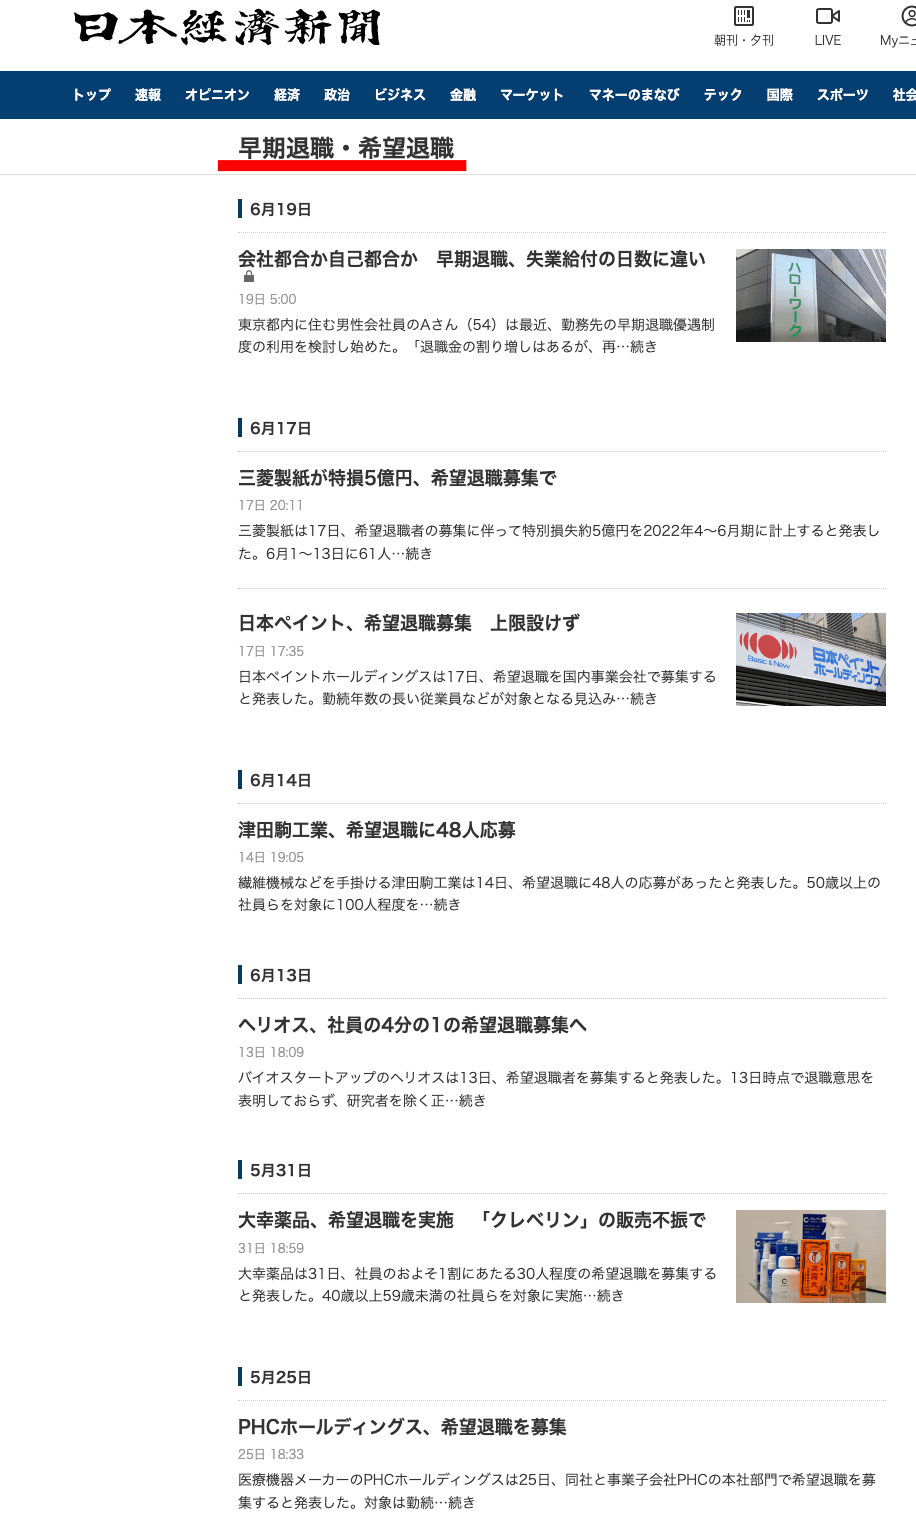 日経新聞リストラ情報